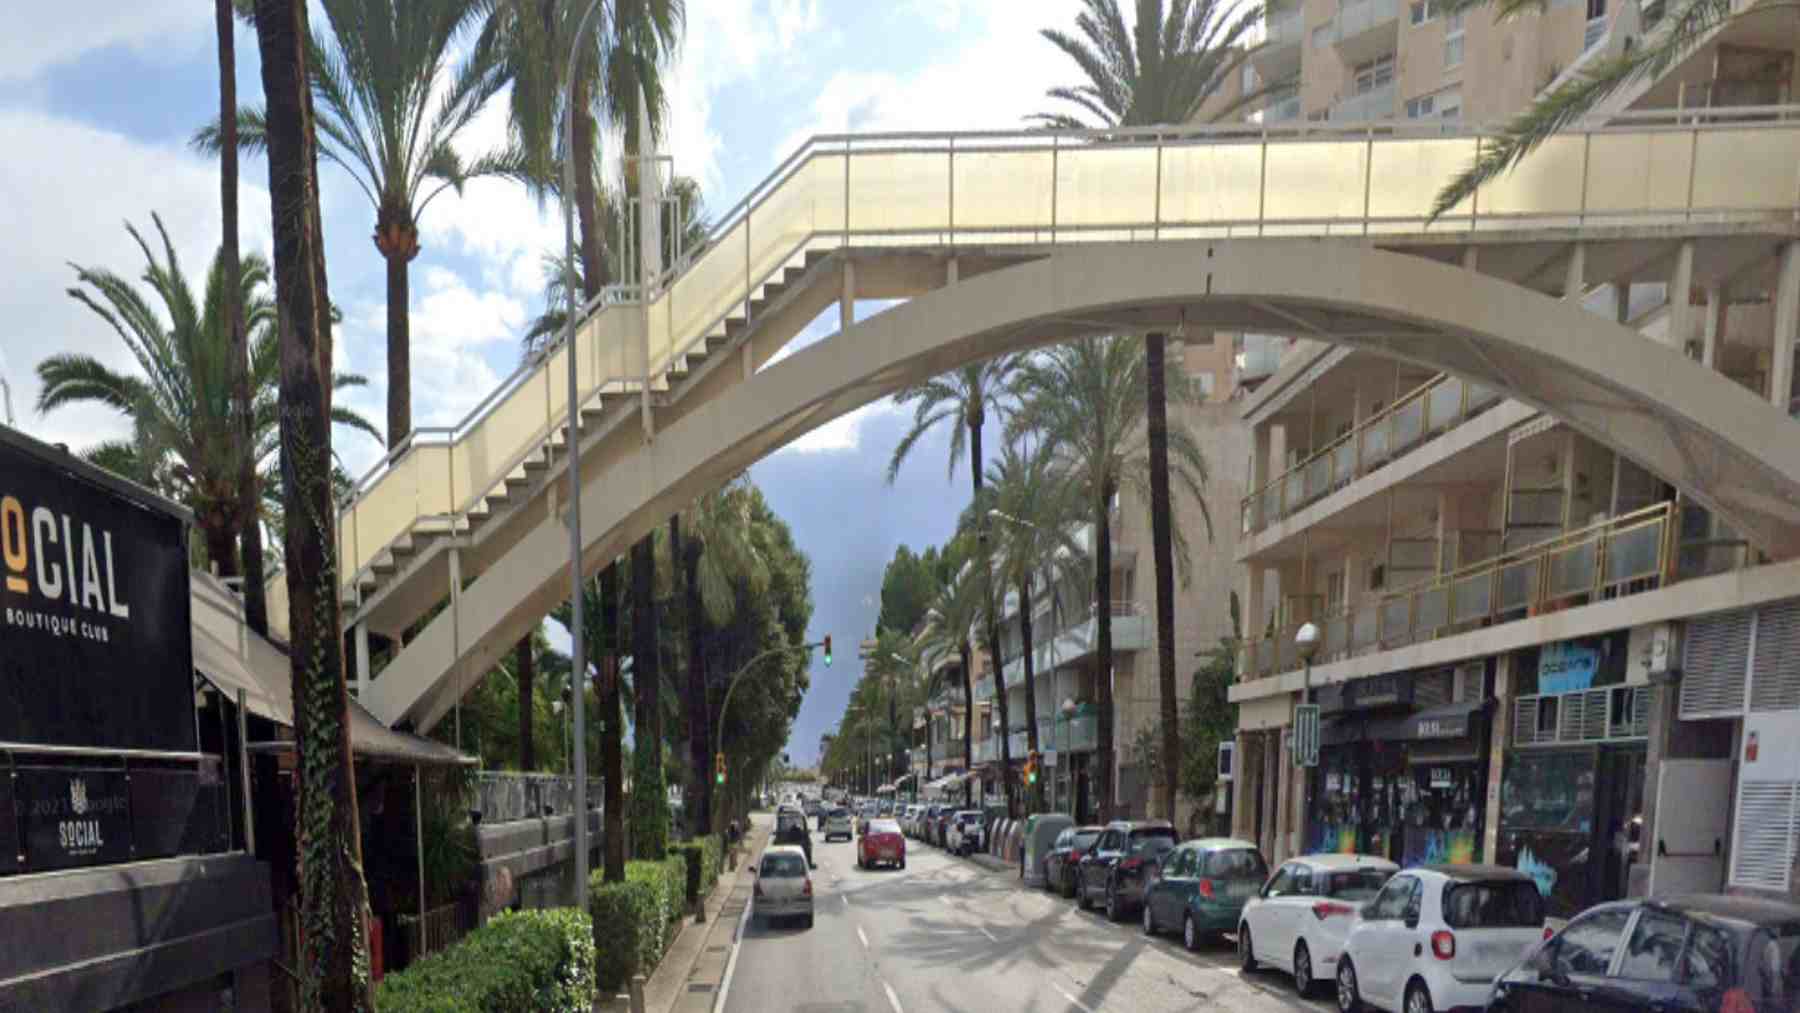 Puente que une el protegido edificio Mediterráneo con el Social Club. en el Paseo Marítimo de Palma.